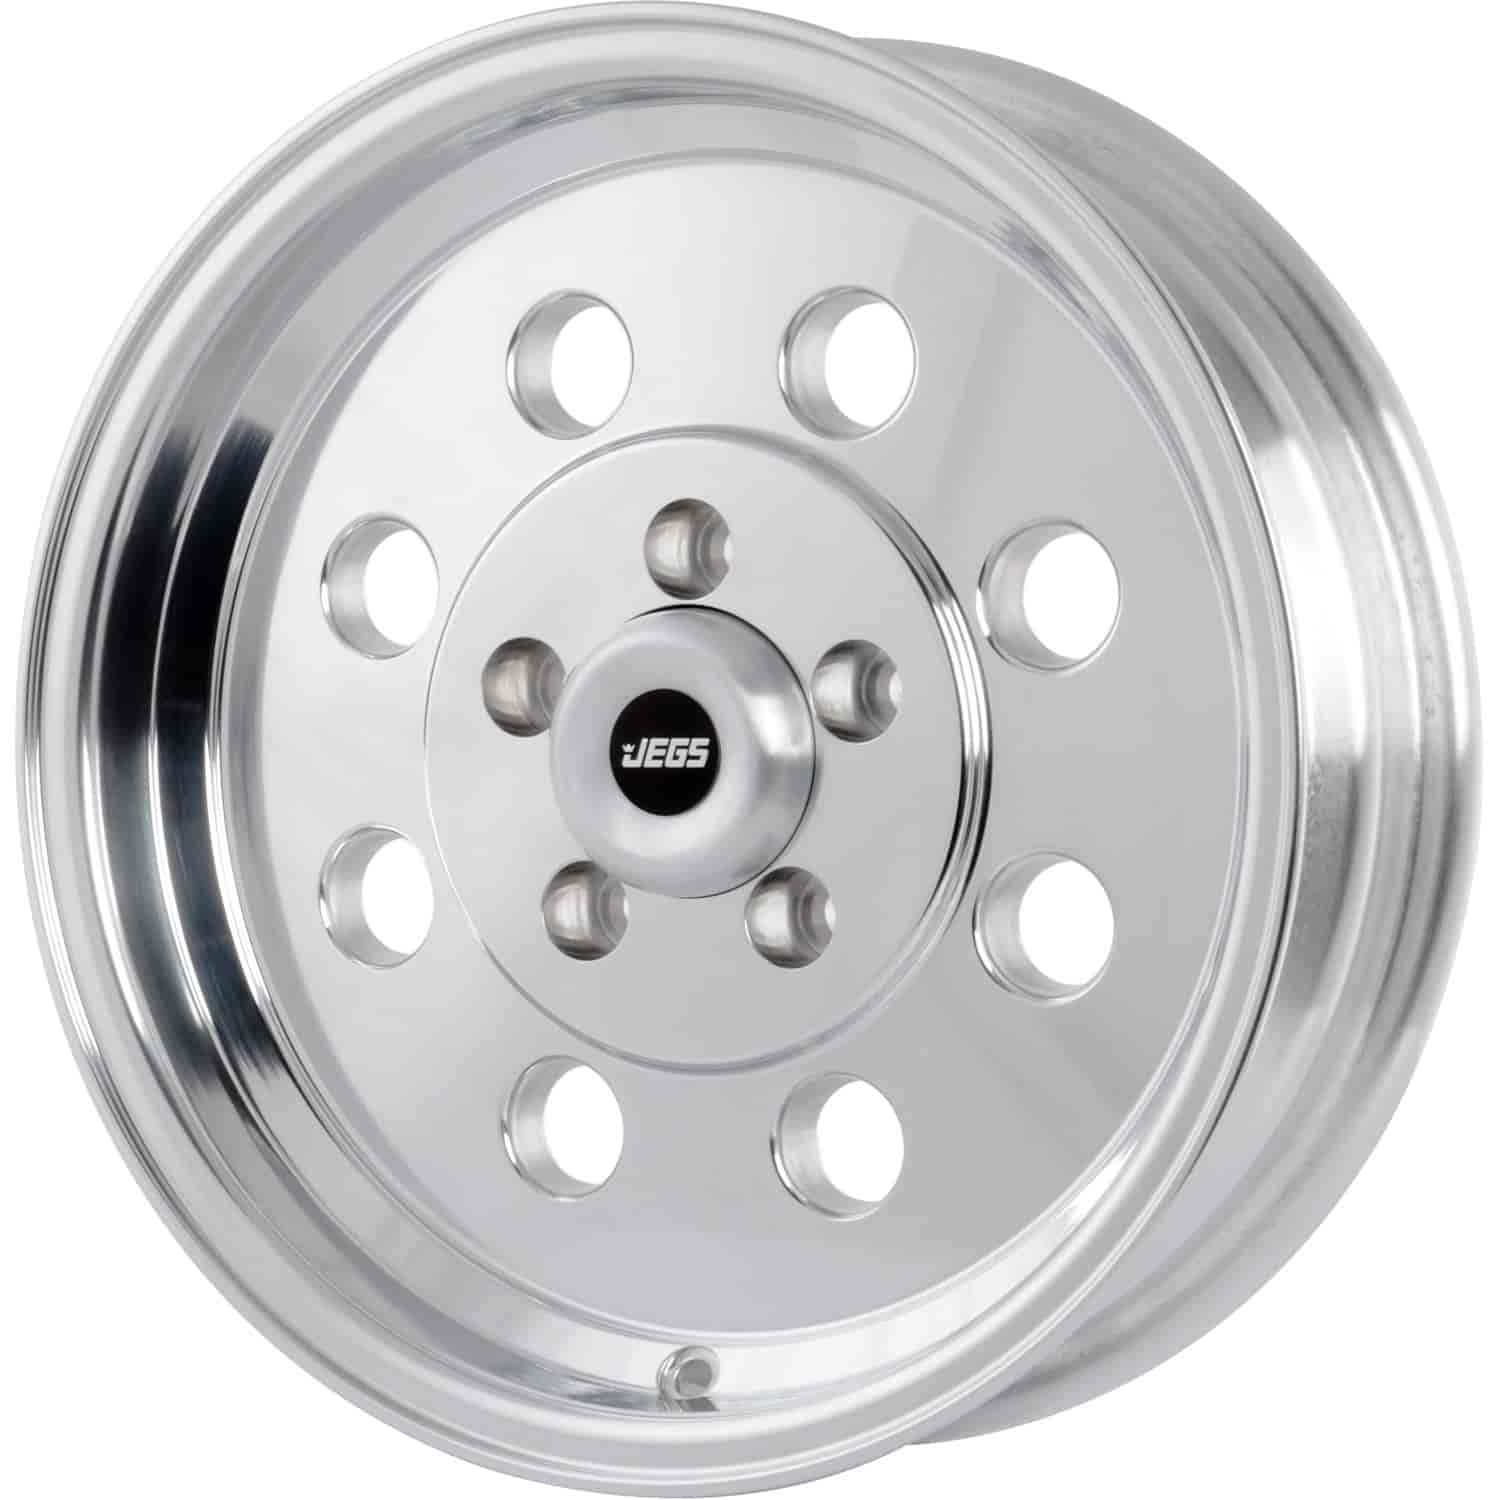 Sport Lite 8-Hole Wheel [Size: 15" x 4"] Polished